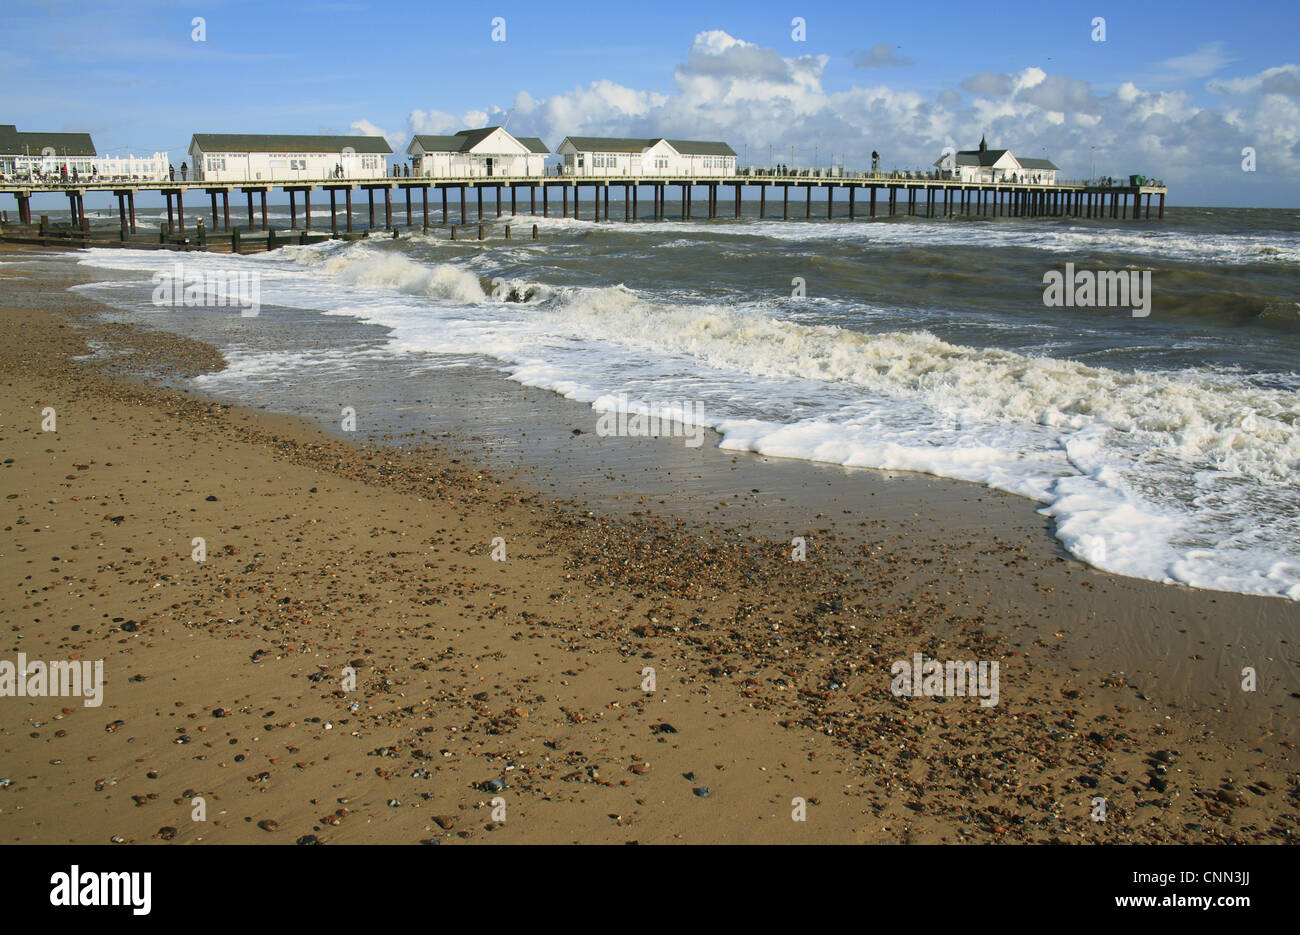 Vue sur la plage et jetée de restauré avec mer agitée, Southwold Pier, Southwold, Suffolk, Angleterre, octobre Banque D'Images